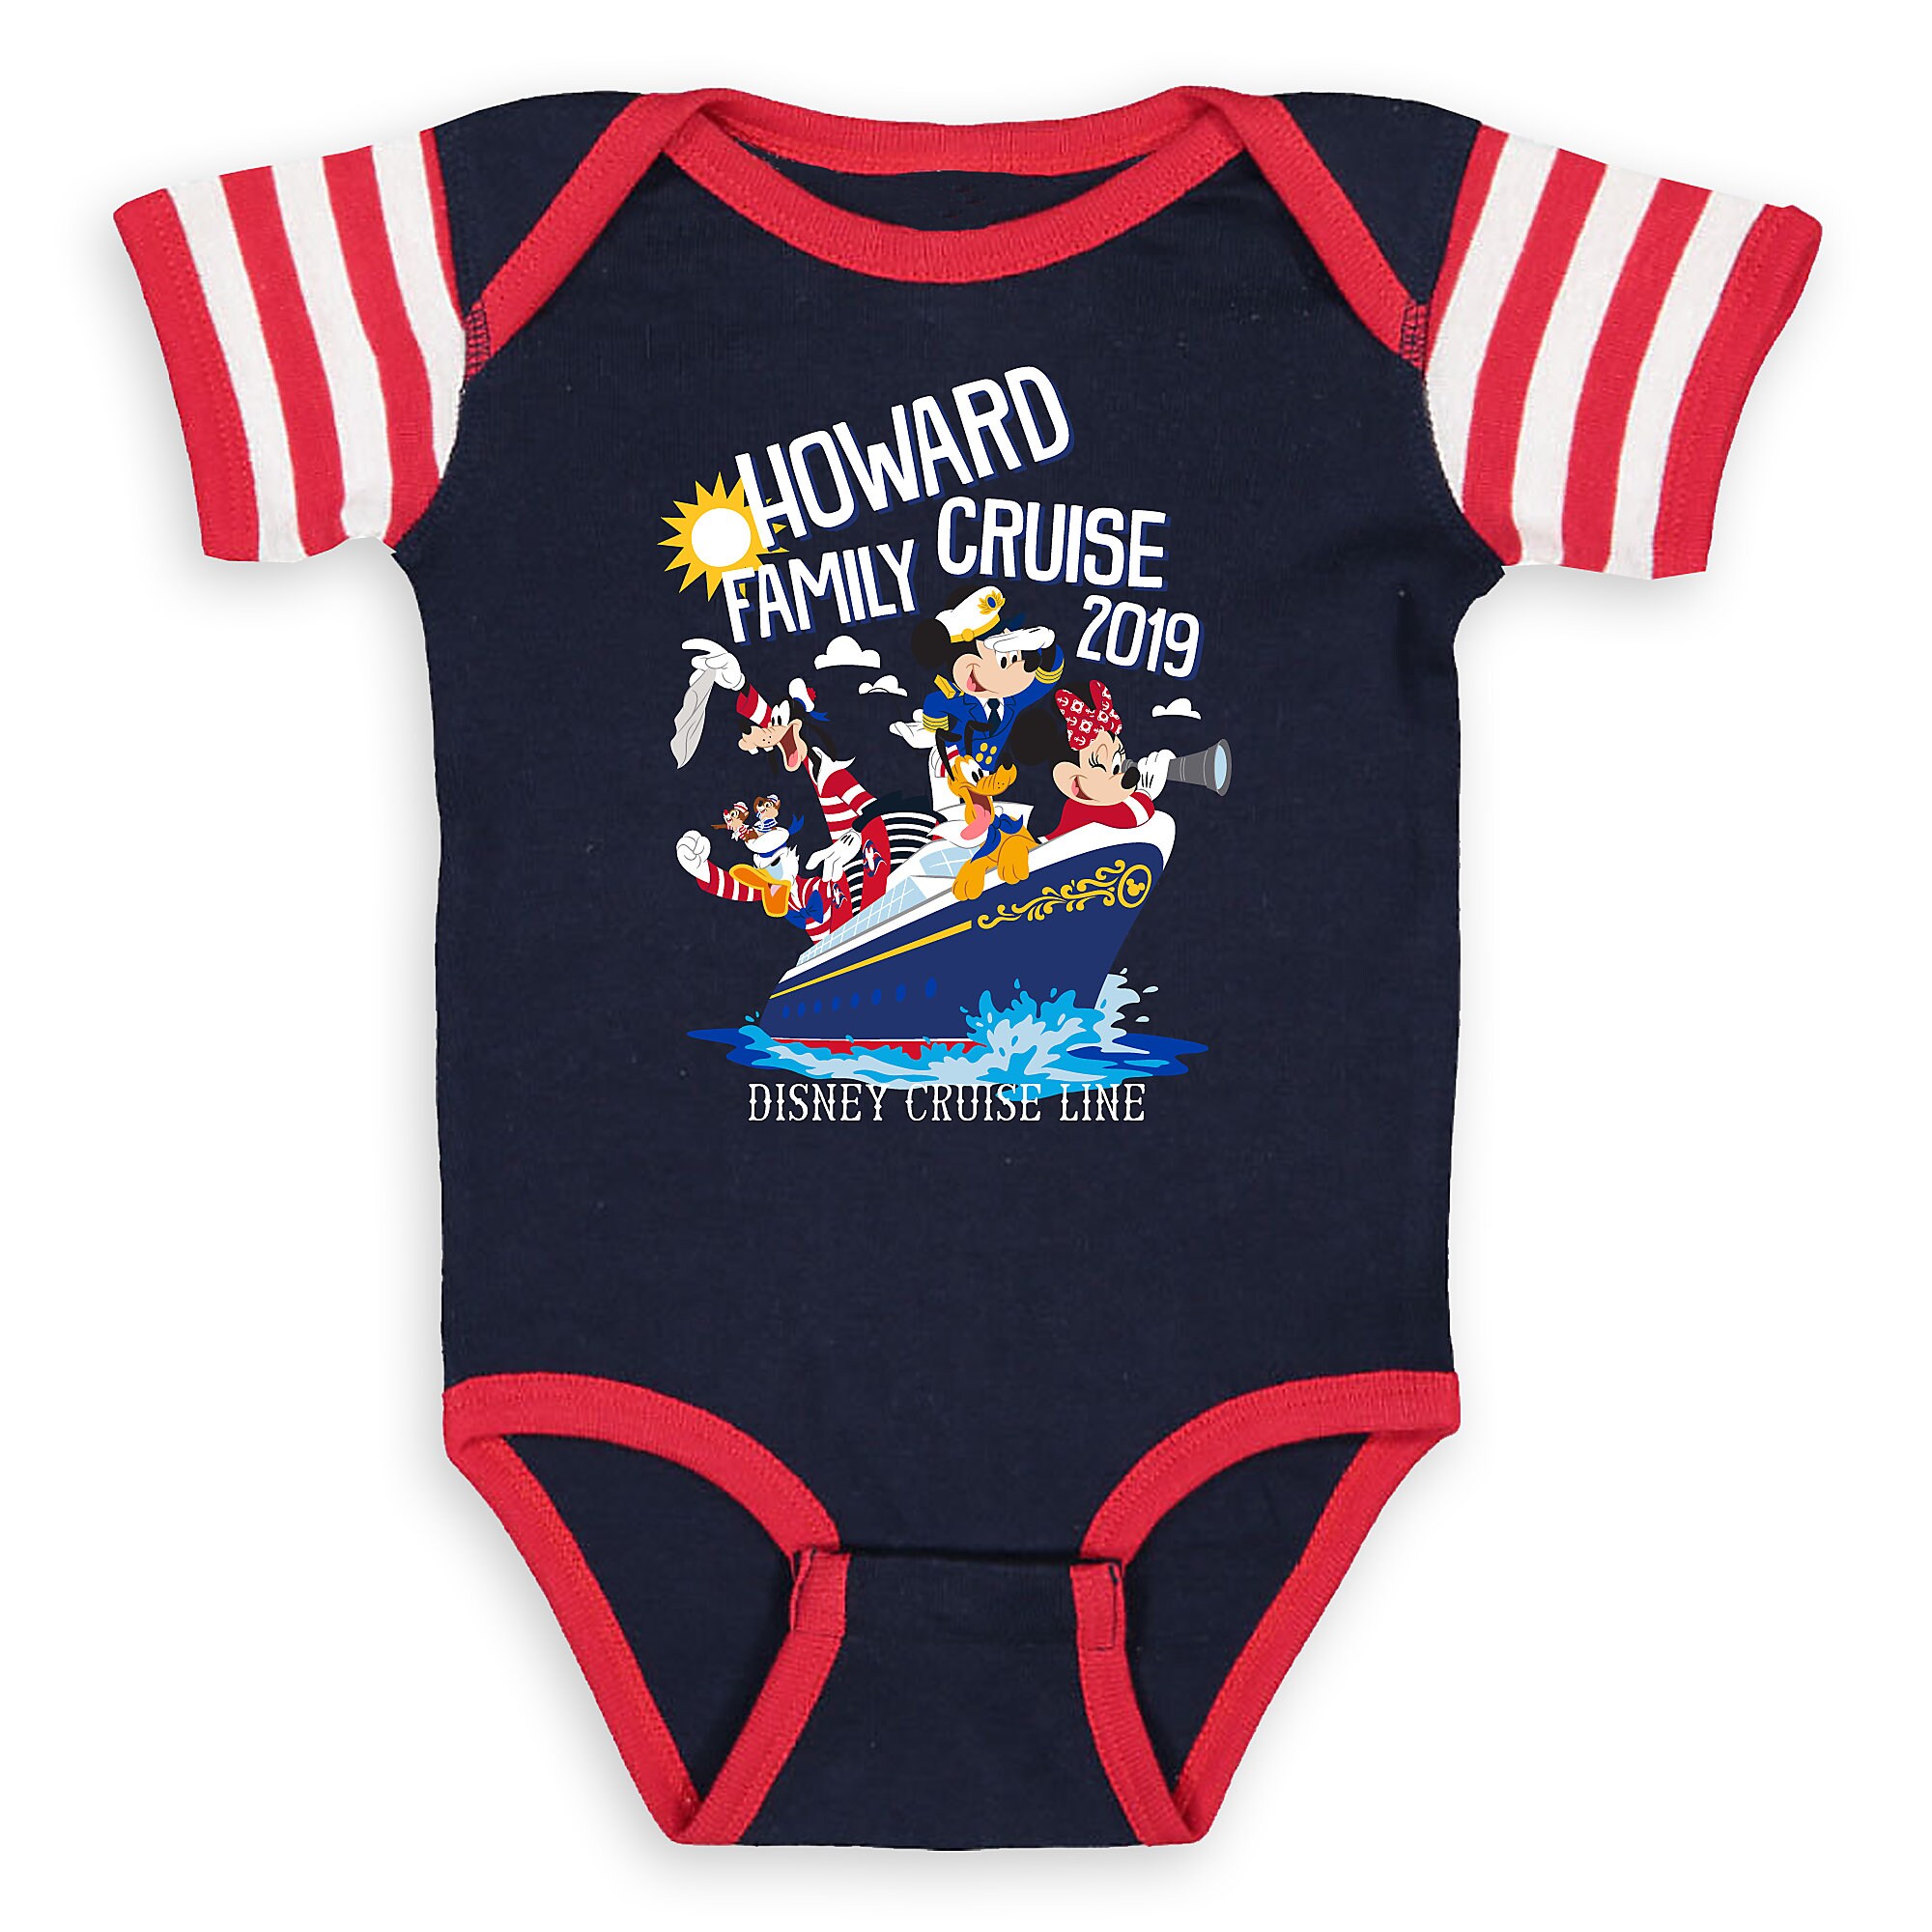 Infants' Disney Cruise Line Family Cruise 2019 Bodysuit - Customized